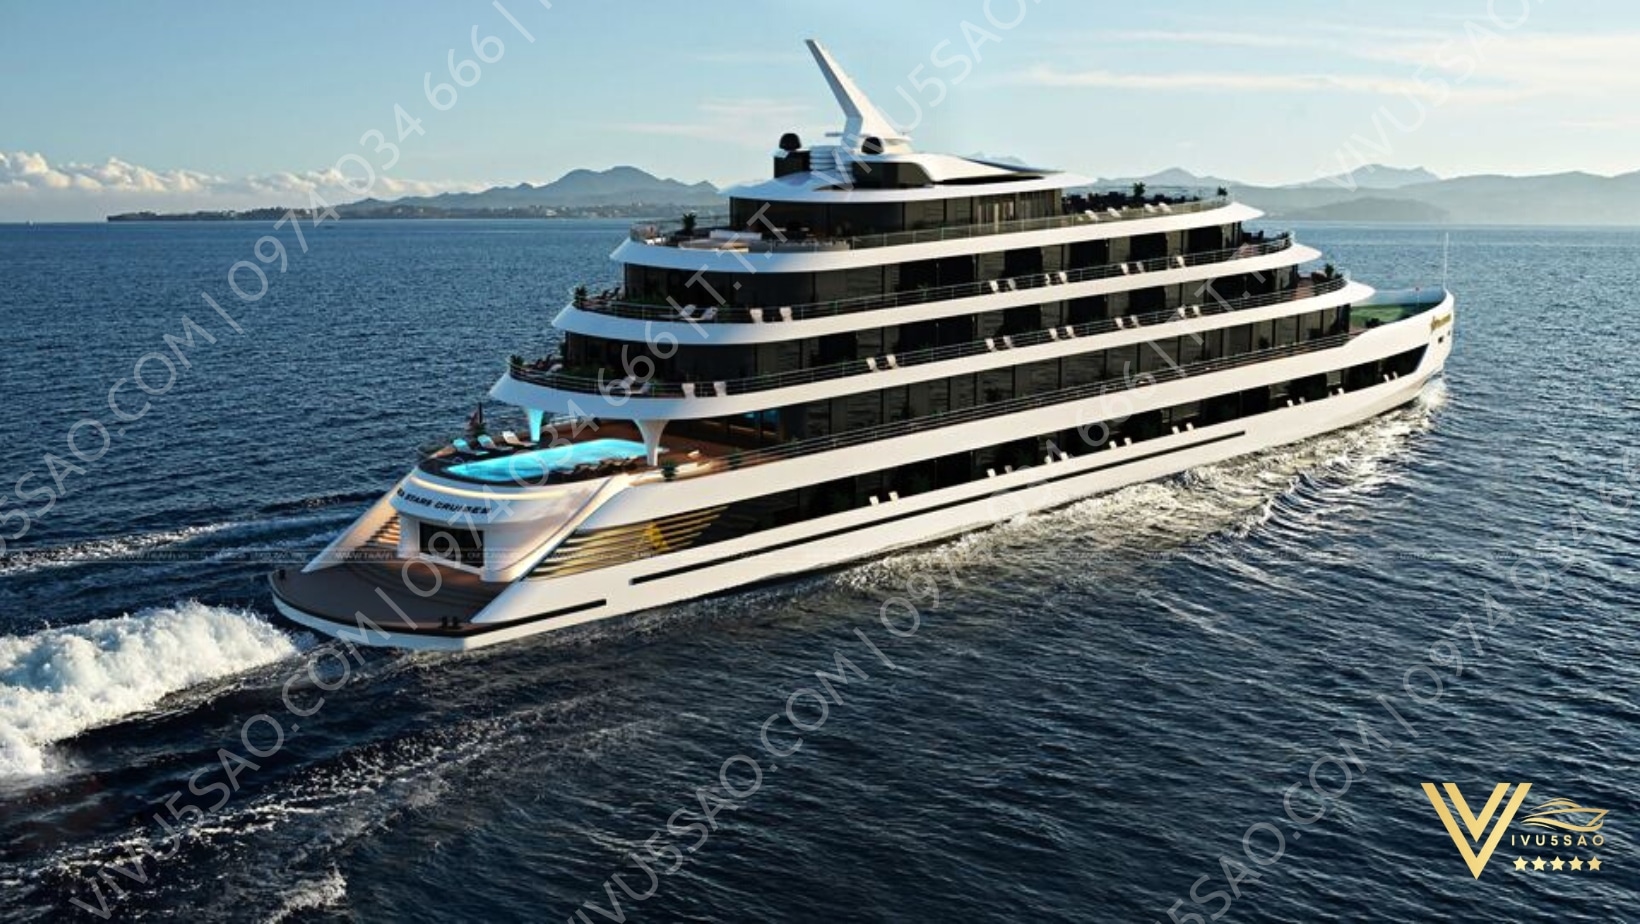 Du thuyền Sea Stars Cruise - Nghỉ đêm trên Vịnh Hạ Long